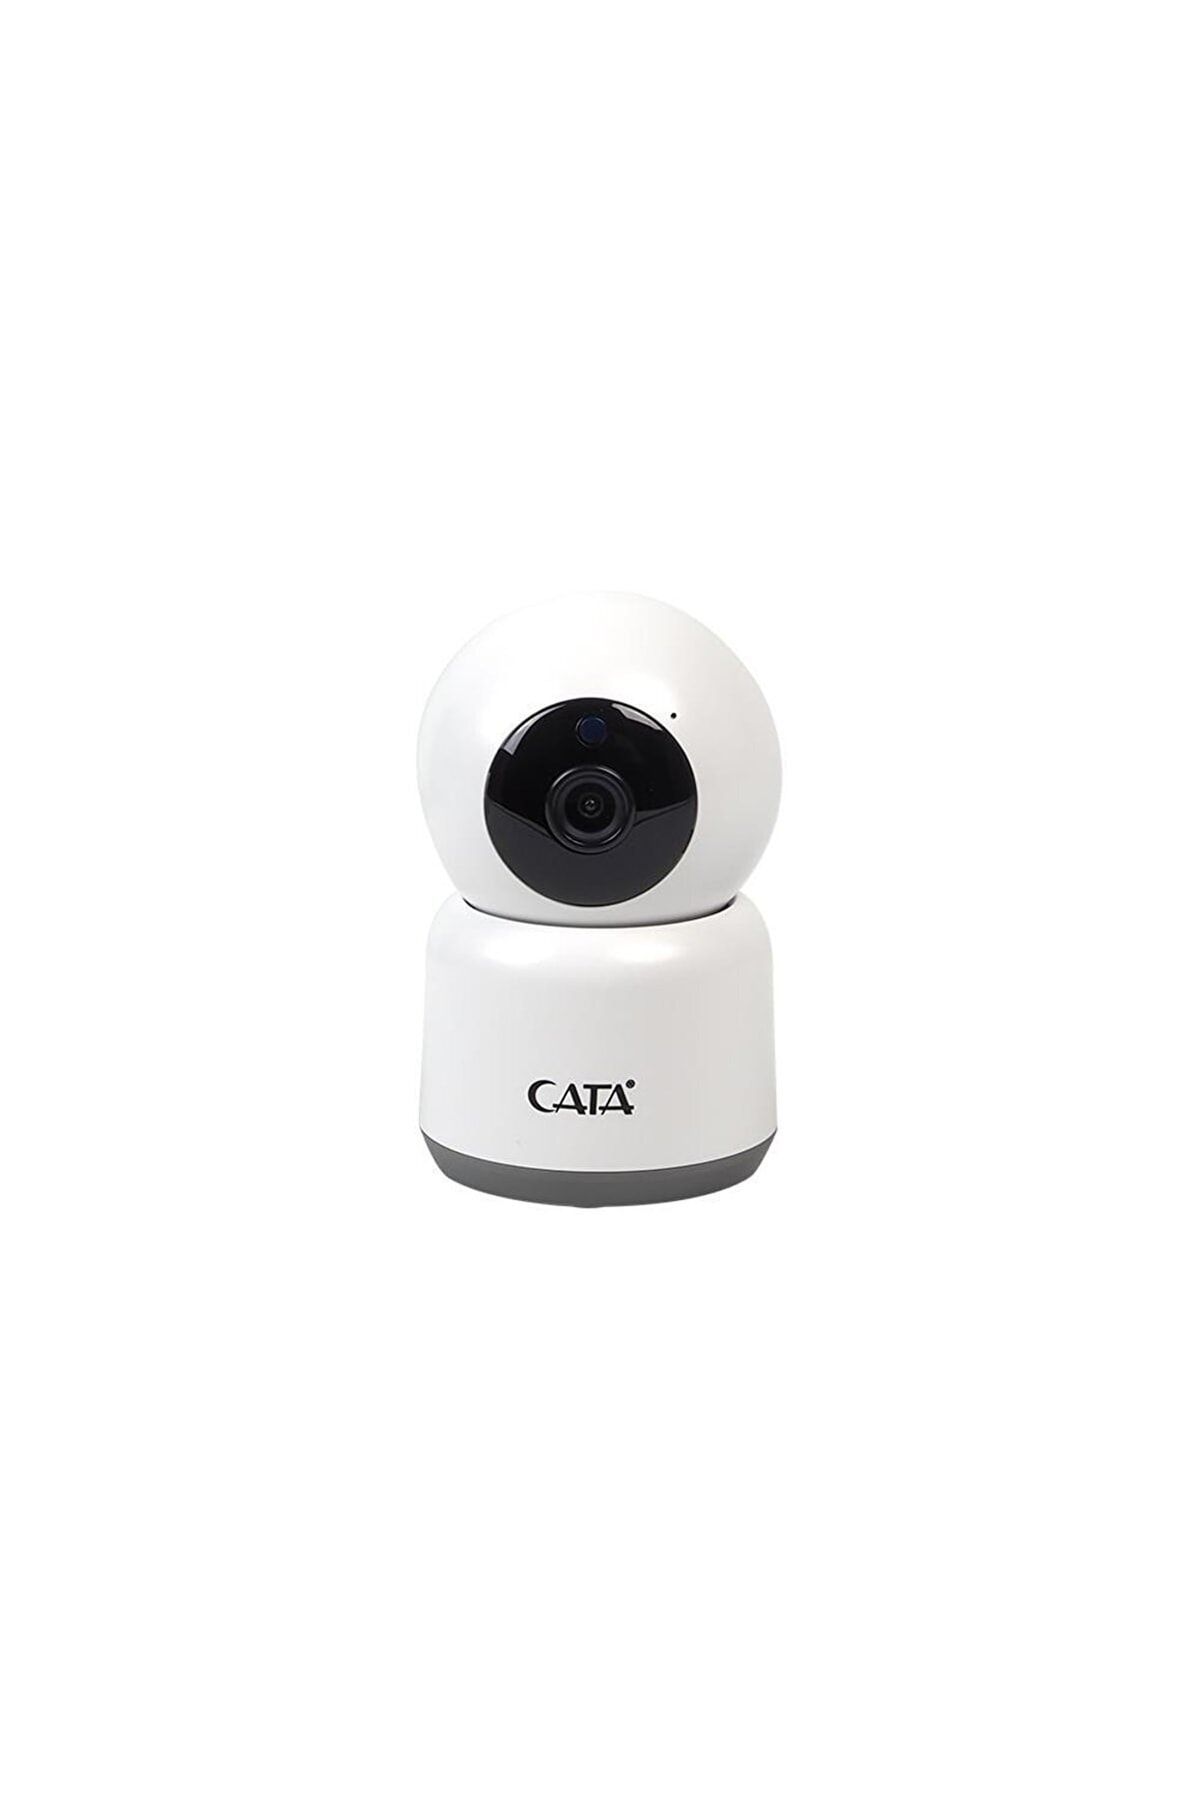 Cata Ct-4050 Gece Görüşlü Full Hd-1080p Akıllı Ip Kamera Tyc00393859840